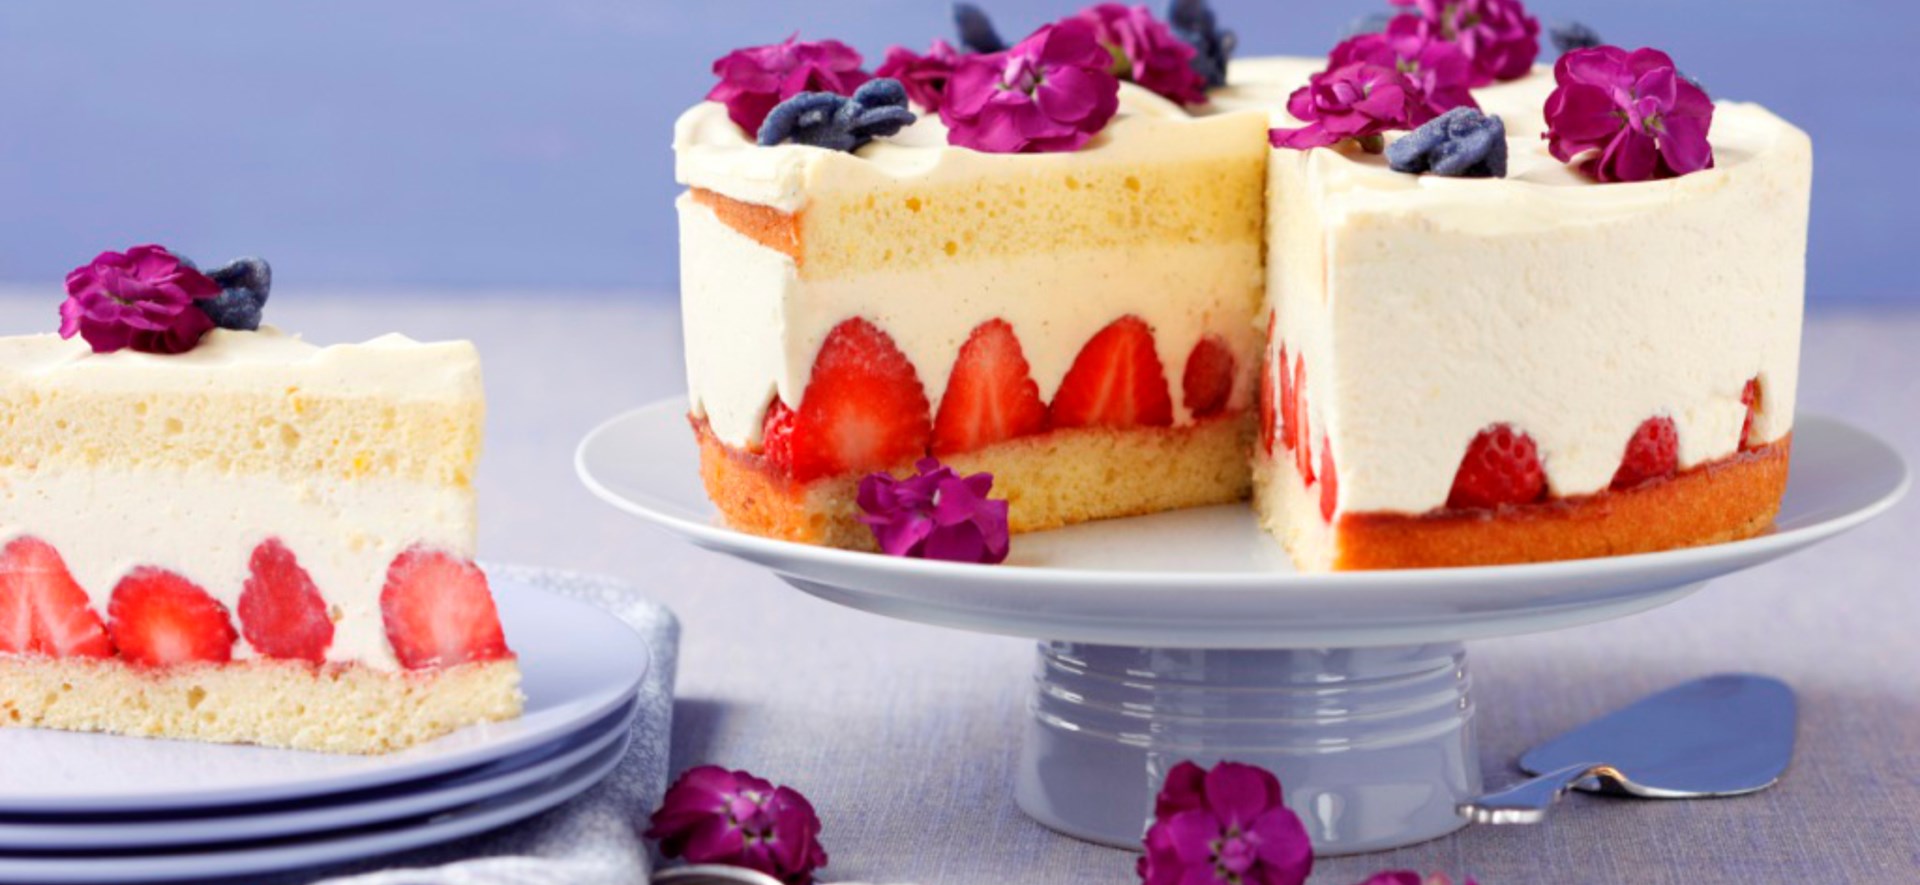 Bild zu Erdbeer-Vanillecreme-Torte